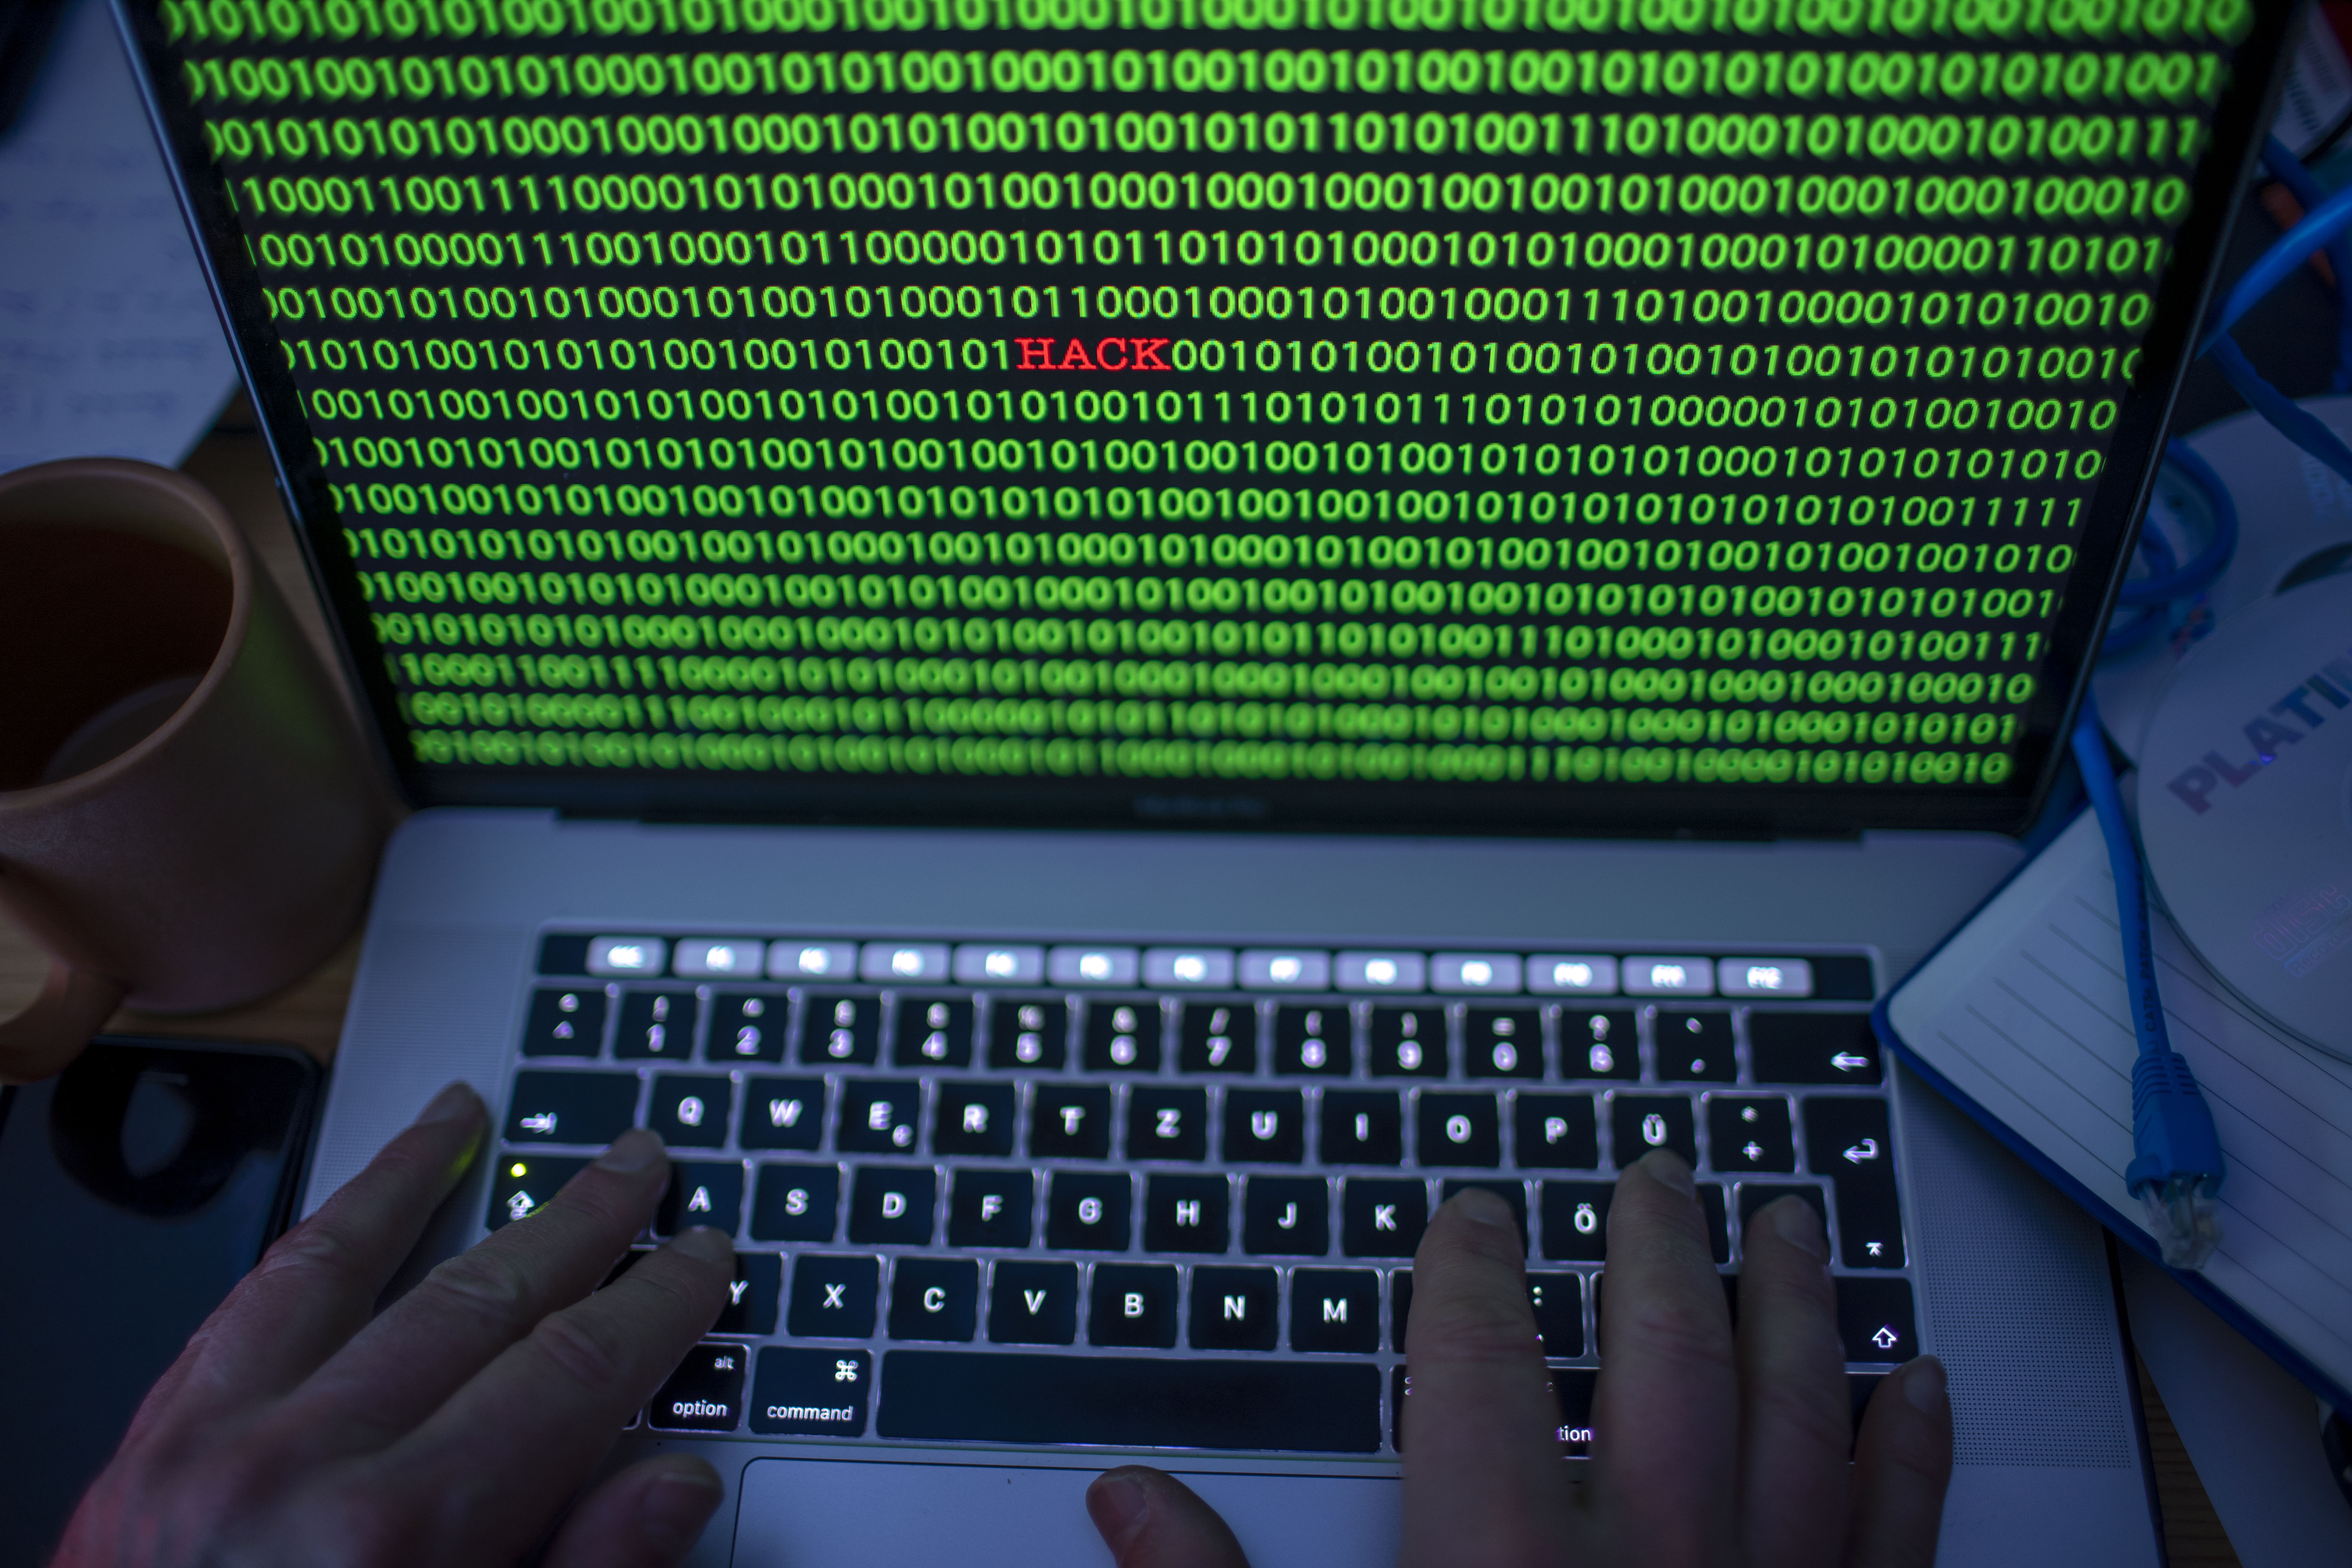 Törvényt sértett az „etikus hacker”, de ha nem jelent veszélyt a társadalomra, a bíróságnak fel kell mentenie